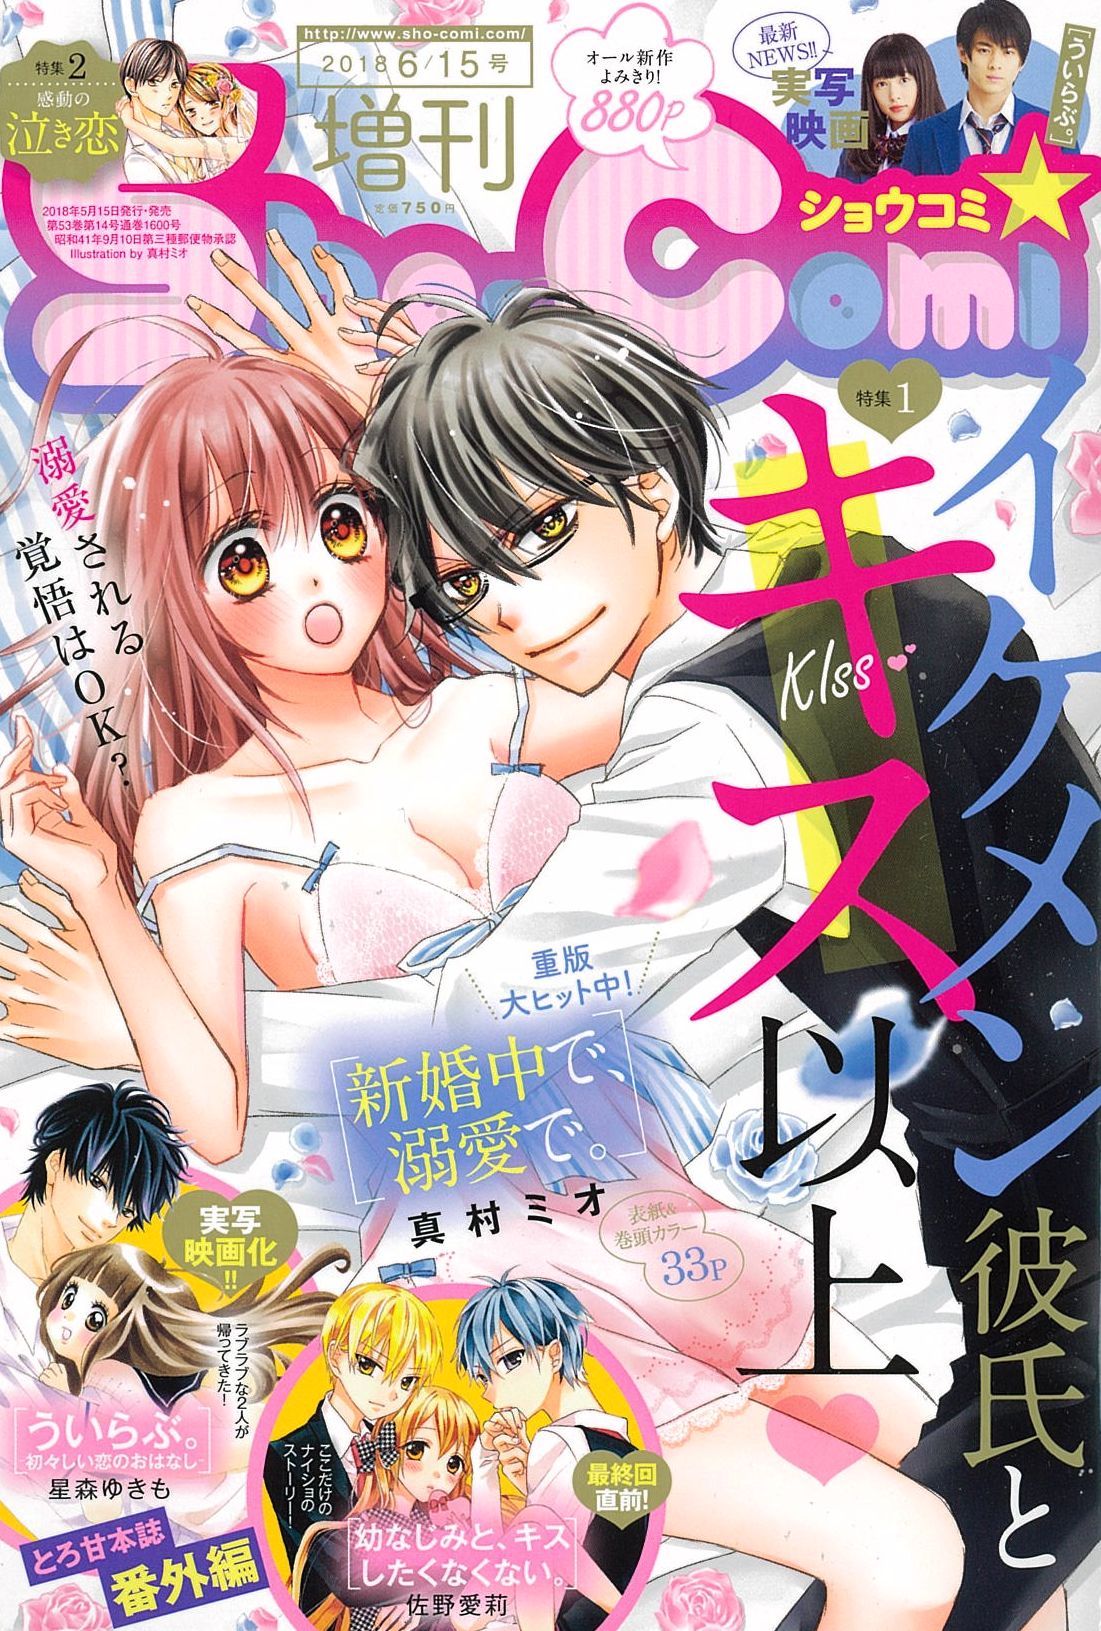 キス以上がいっぱい 6 15号増刊 本日発売 Sho Comiねっと 小学館コミック